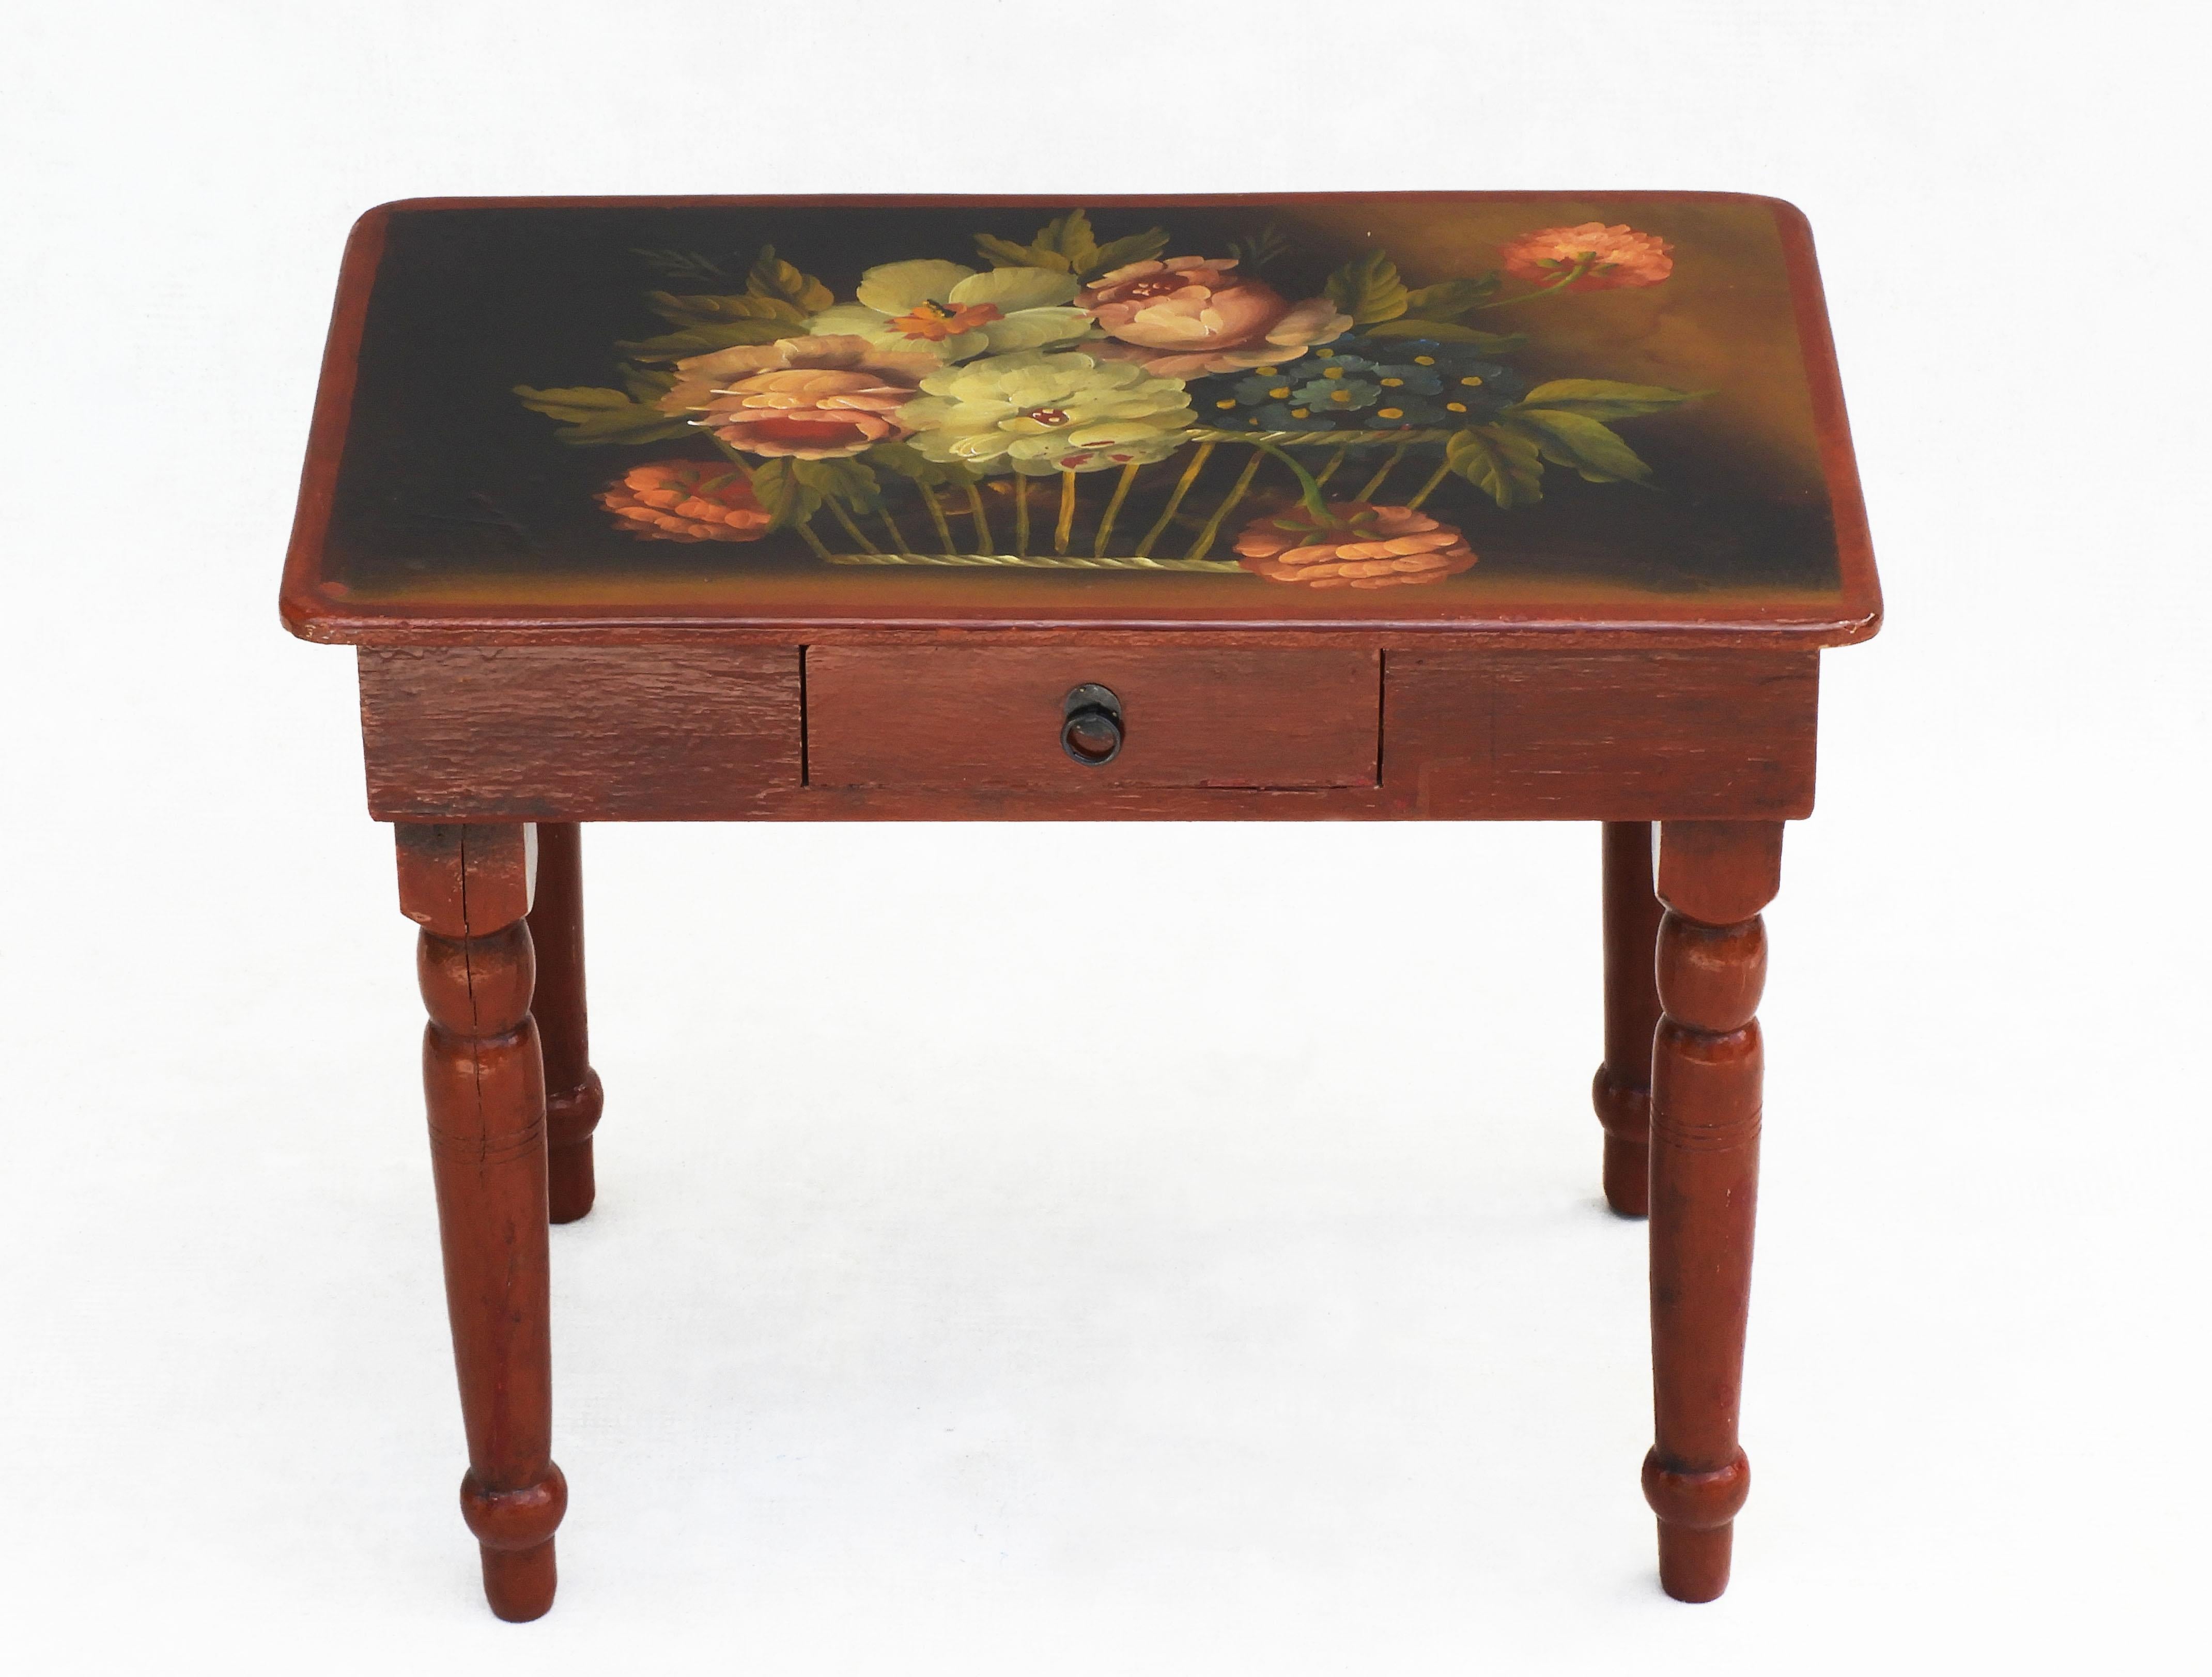 Vintage Folk Art handgemalten Tisch C1940s Frankreich.
Charmanter französischer Beistelltisch aus Holz, schön dekoriert mit einem Blumenarrangement. Ein schönes Beispiel für die französische 'Arte Populaire' des frühen 20. Jahrhunderts, perfekt als